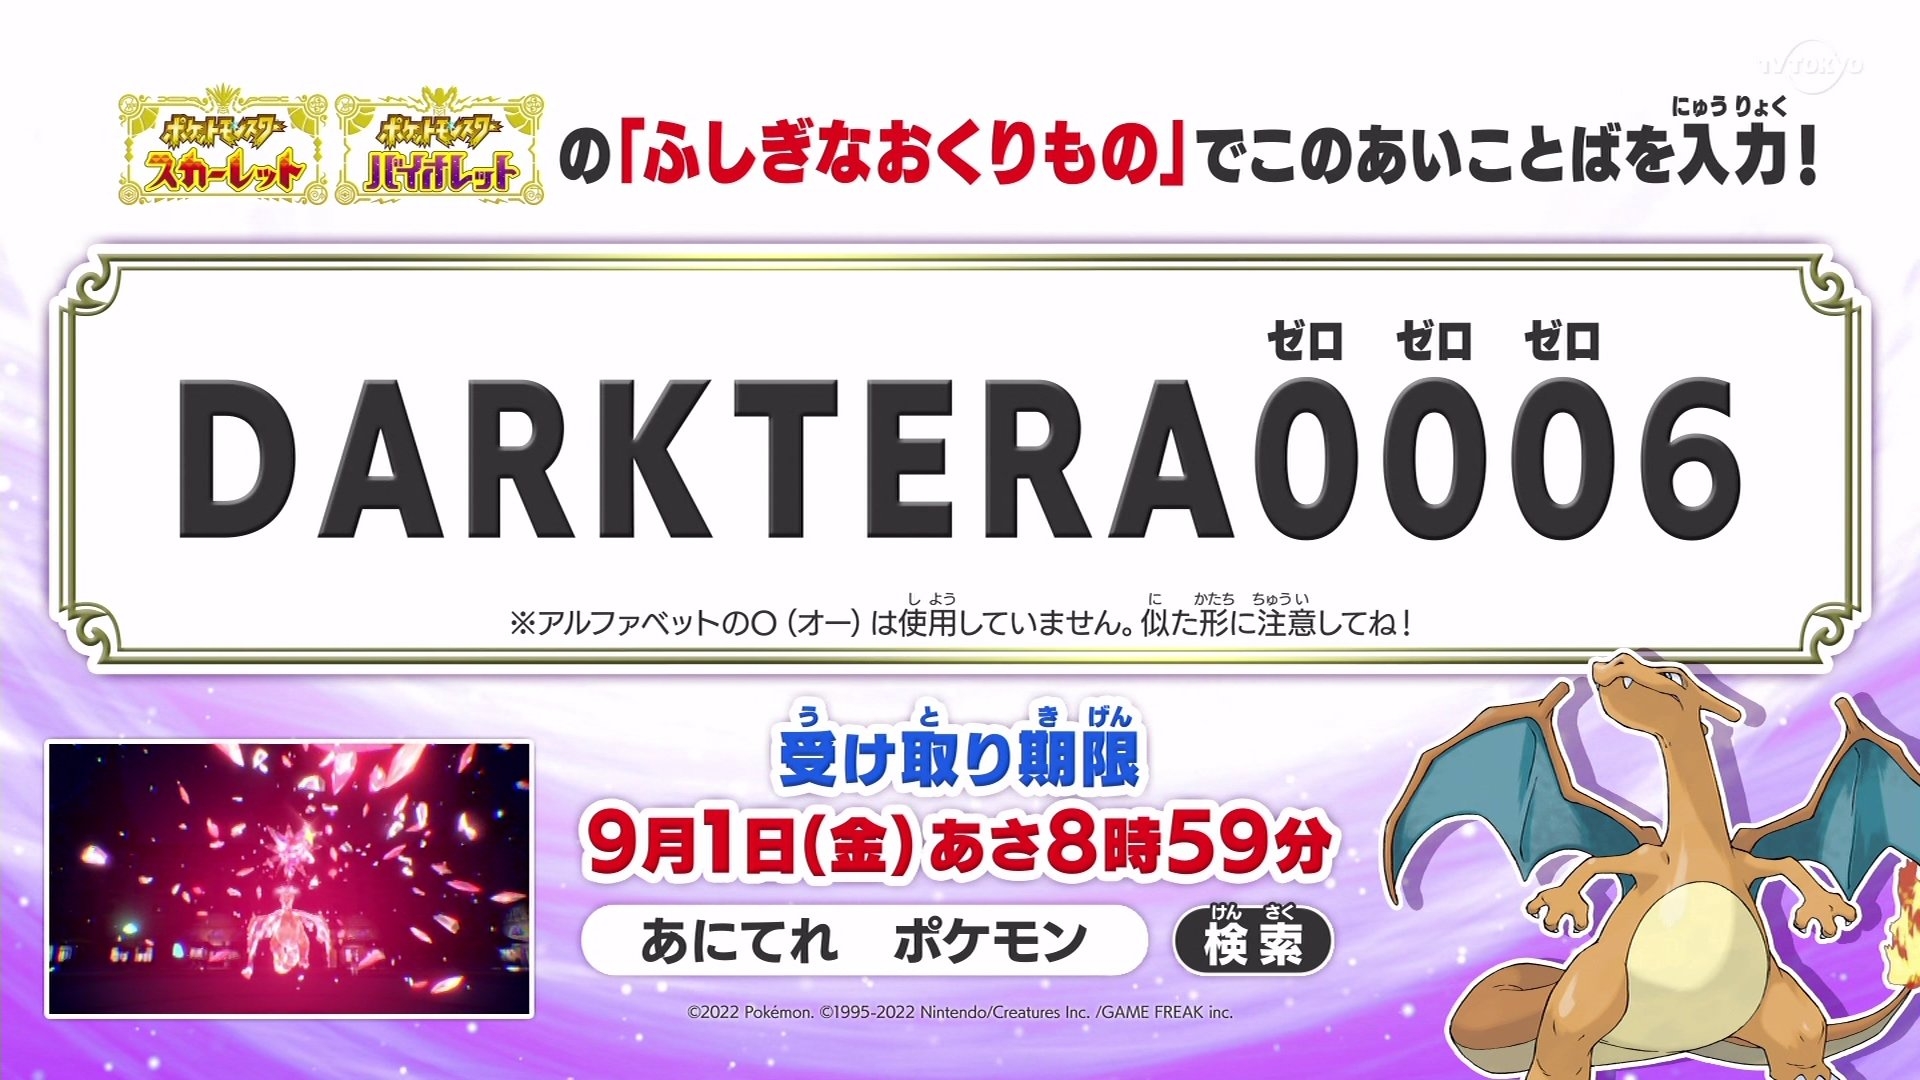 Use code「DARKTERA0006」in Pokémon Scarlet & Violet to receive a Dark Tera Type Charizard